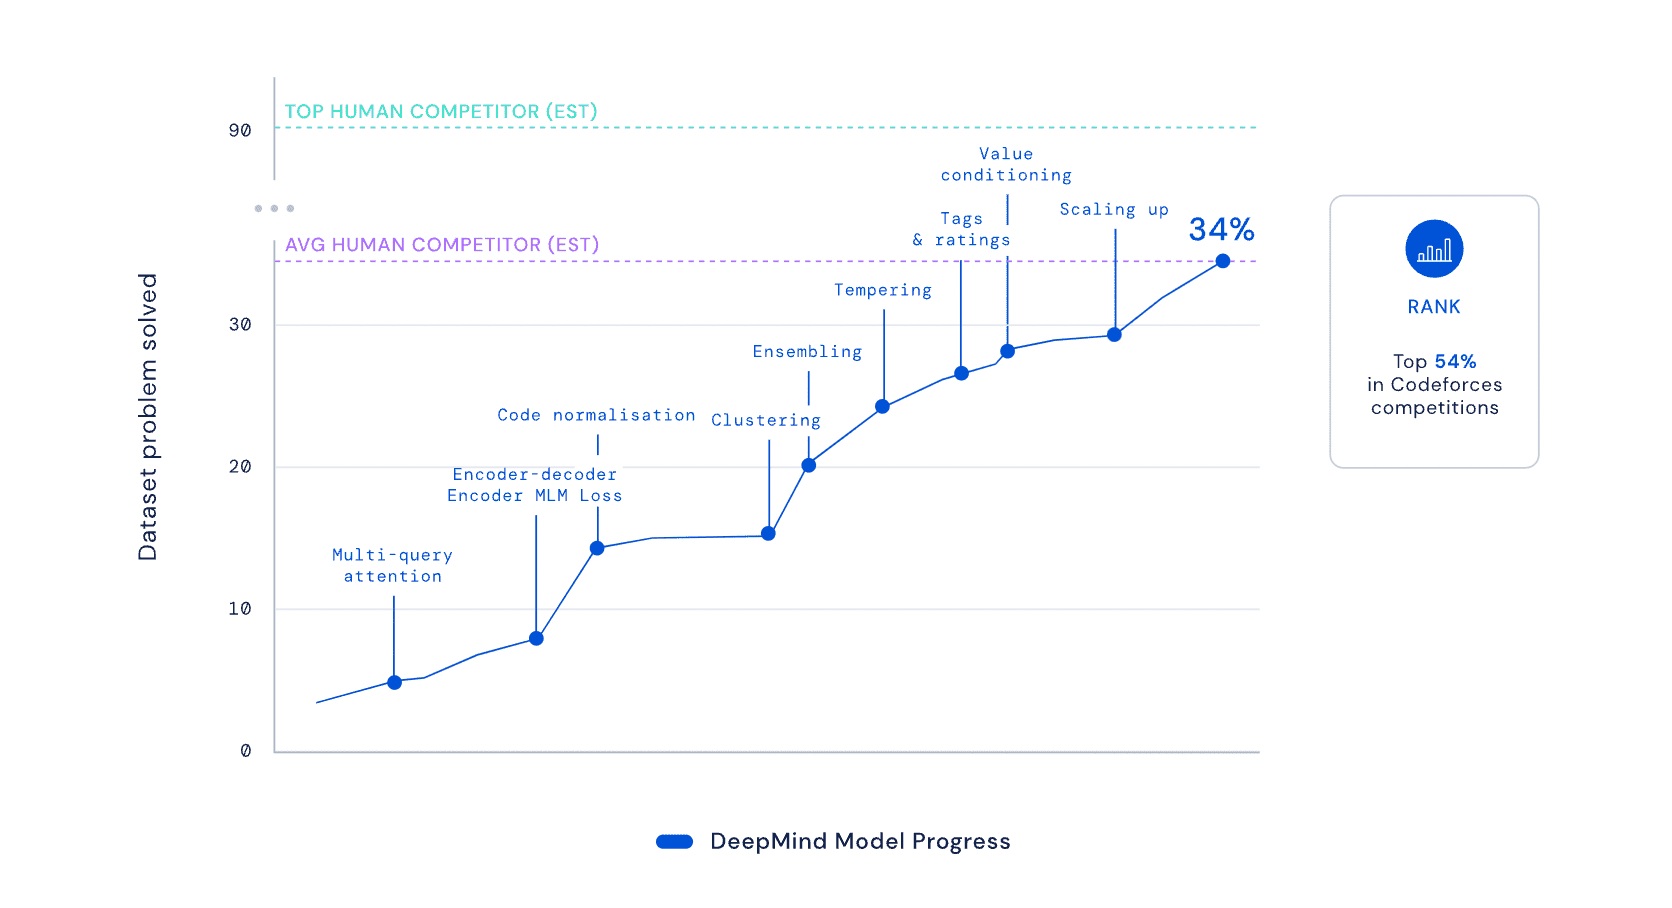 Graf znázorňující srovnání AI DeepMind s lidskými programátory